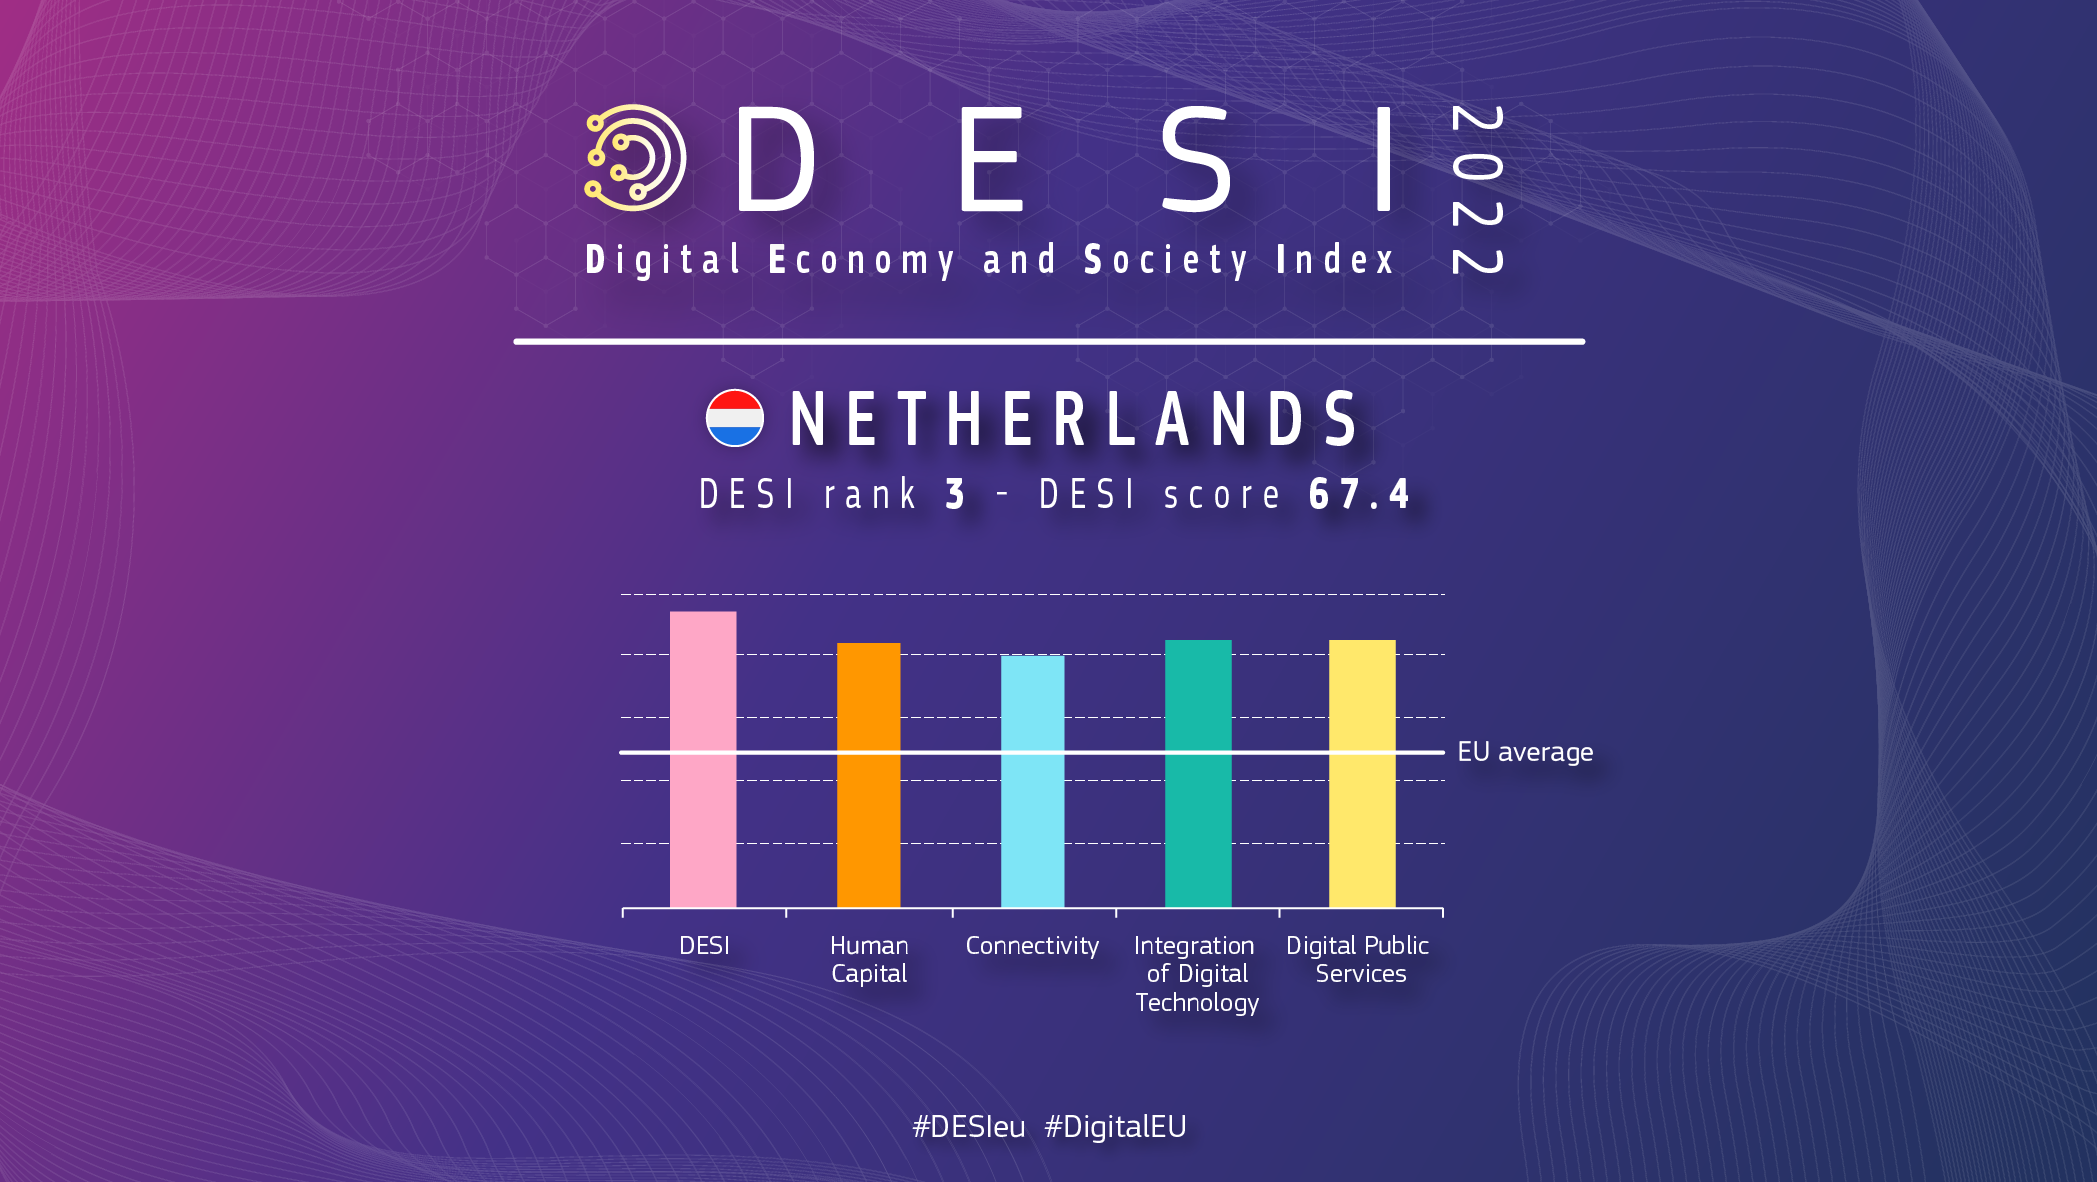 Grafisks pārskats par Nīderlandi DESI, kas parāda 3 rangu ar 67,4 punktu skaitu